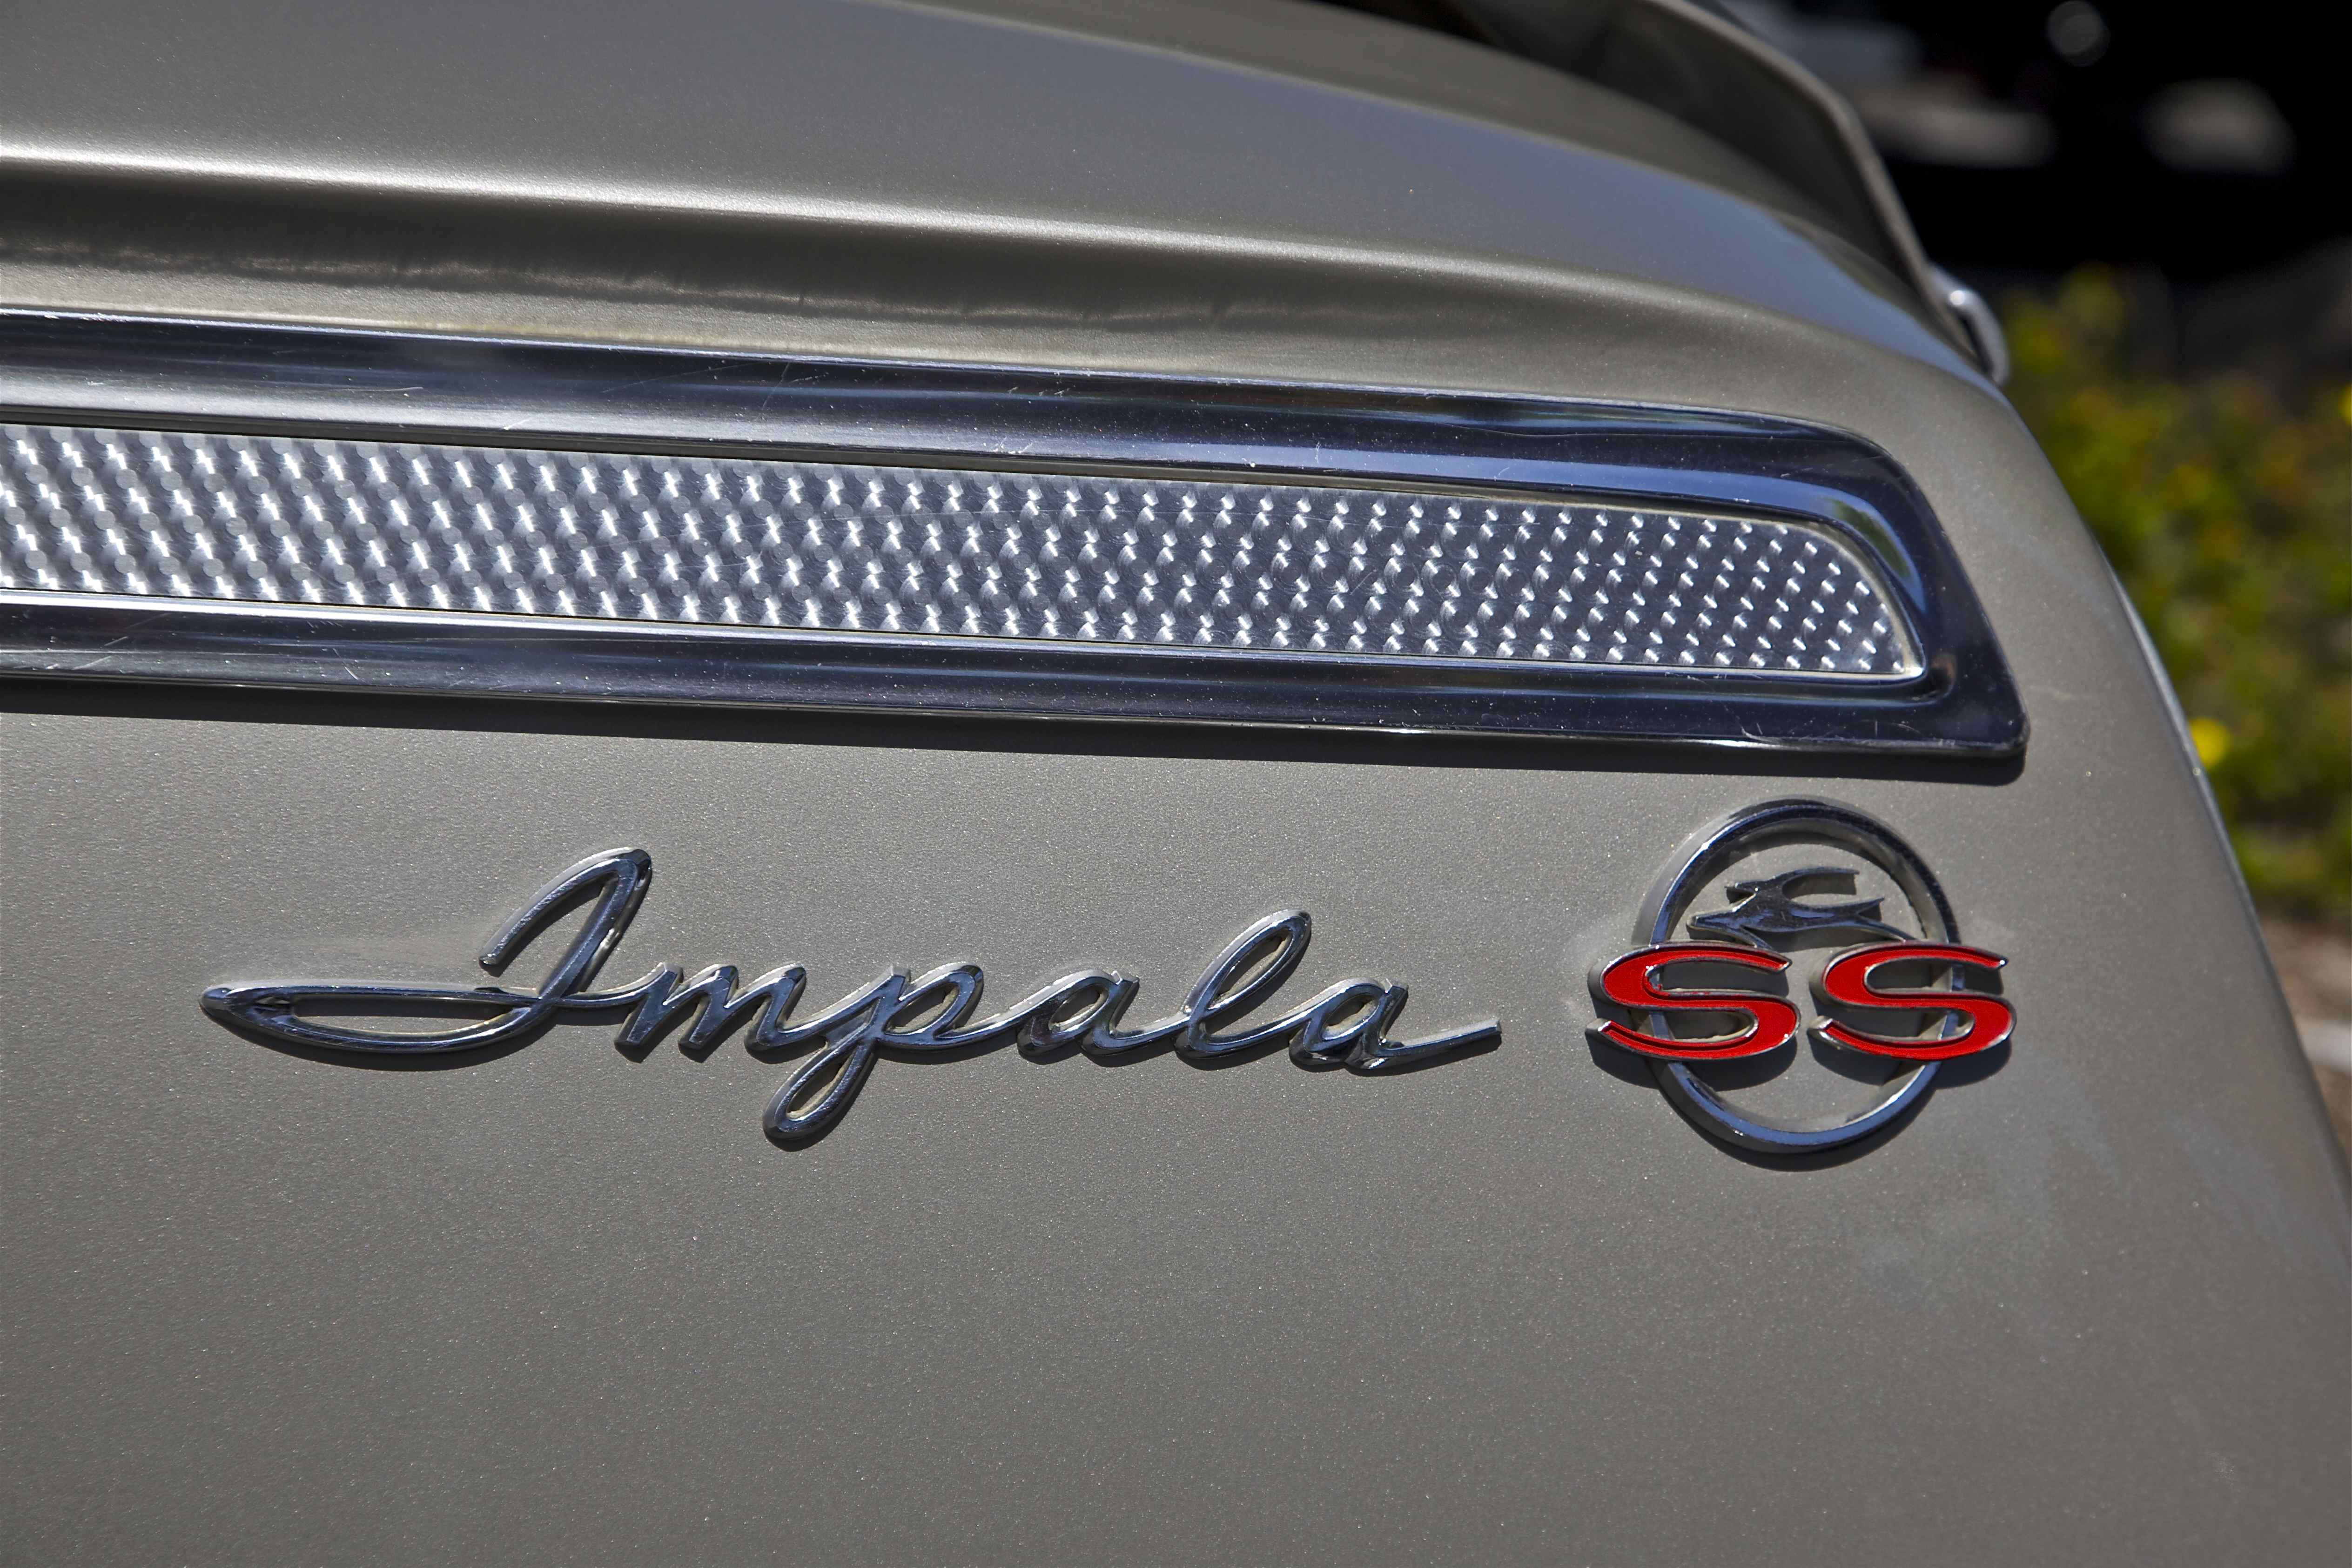 Télécharger des fonds d'écran Chevrolet Impala Ss HD